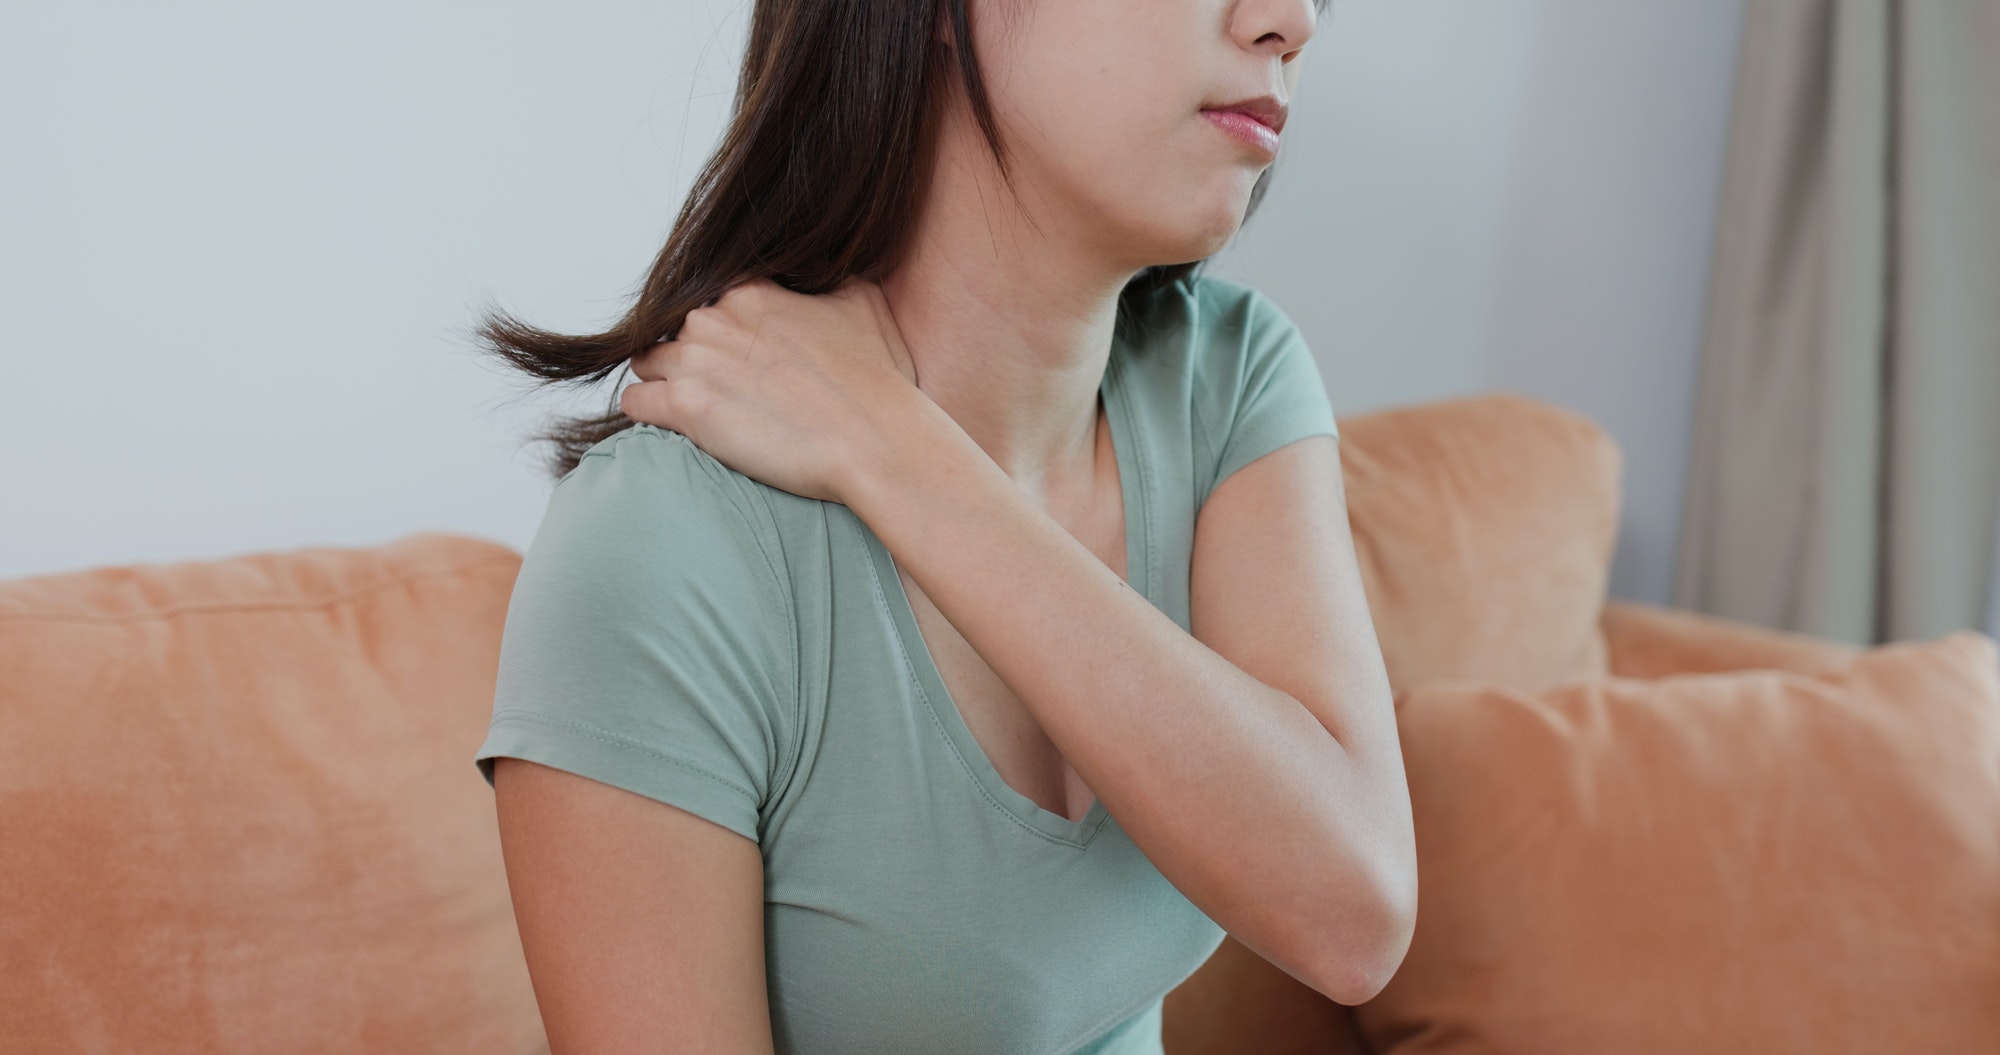 Back Pain Between Shoulder Blades - 13 Proven Methods For Relief